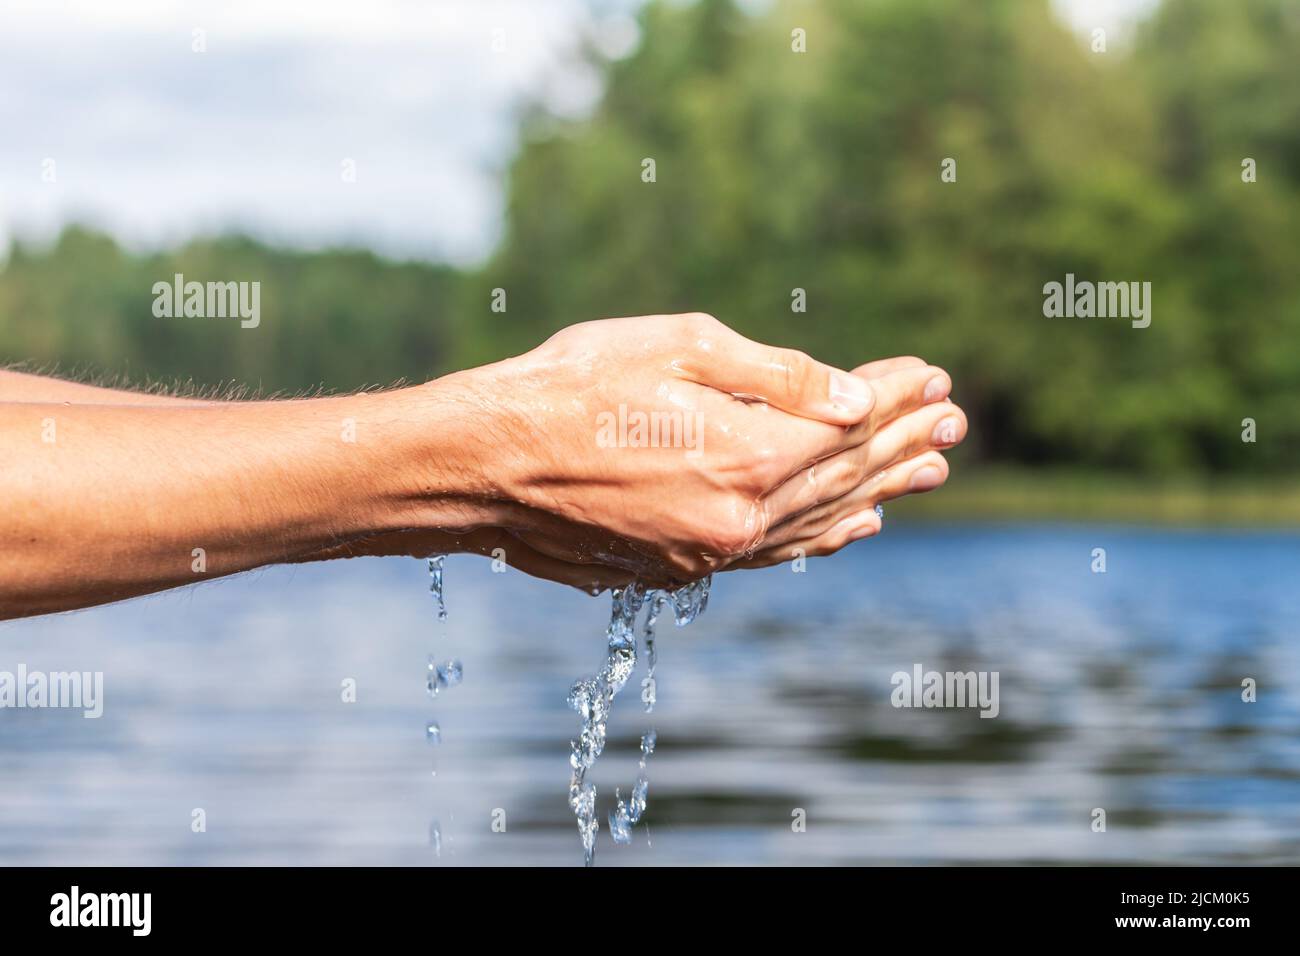 Personne ramasse l'eau brute d'un lac. Concept de sensibilisation à l'environnement des ressources en eau naturelles Banque D'Images